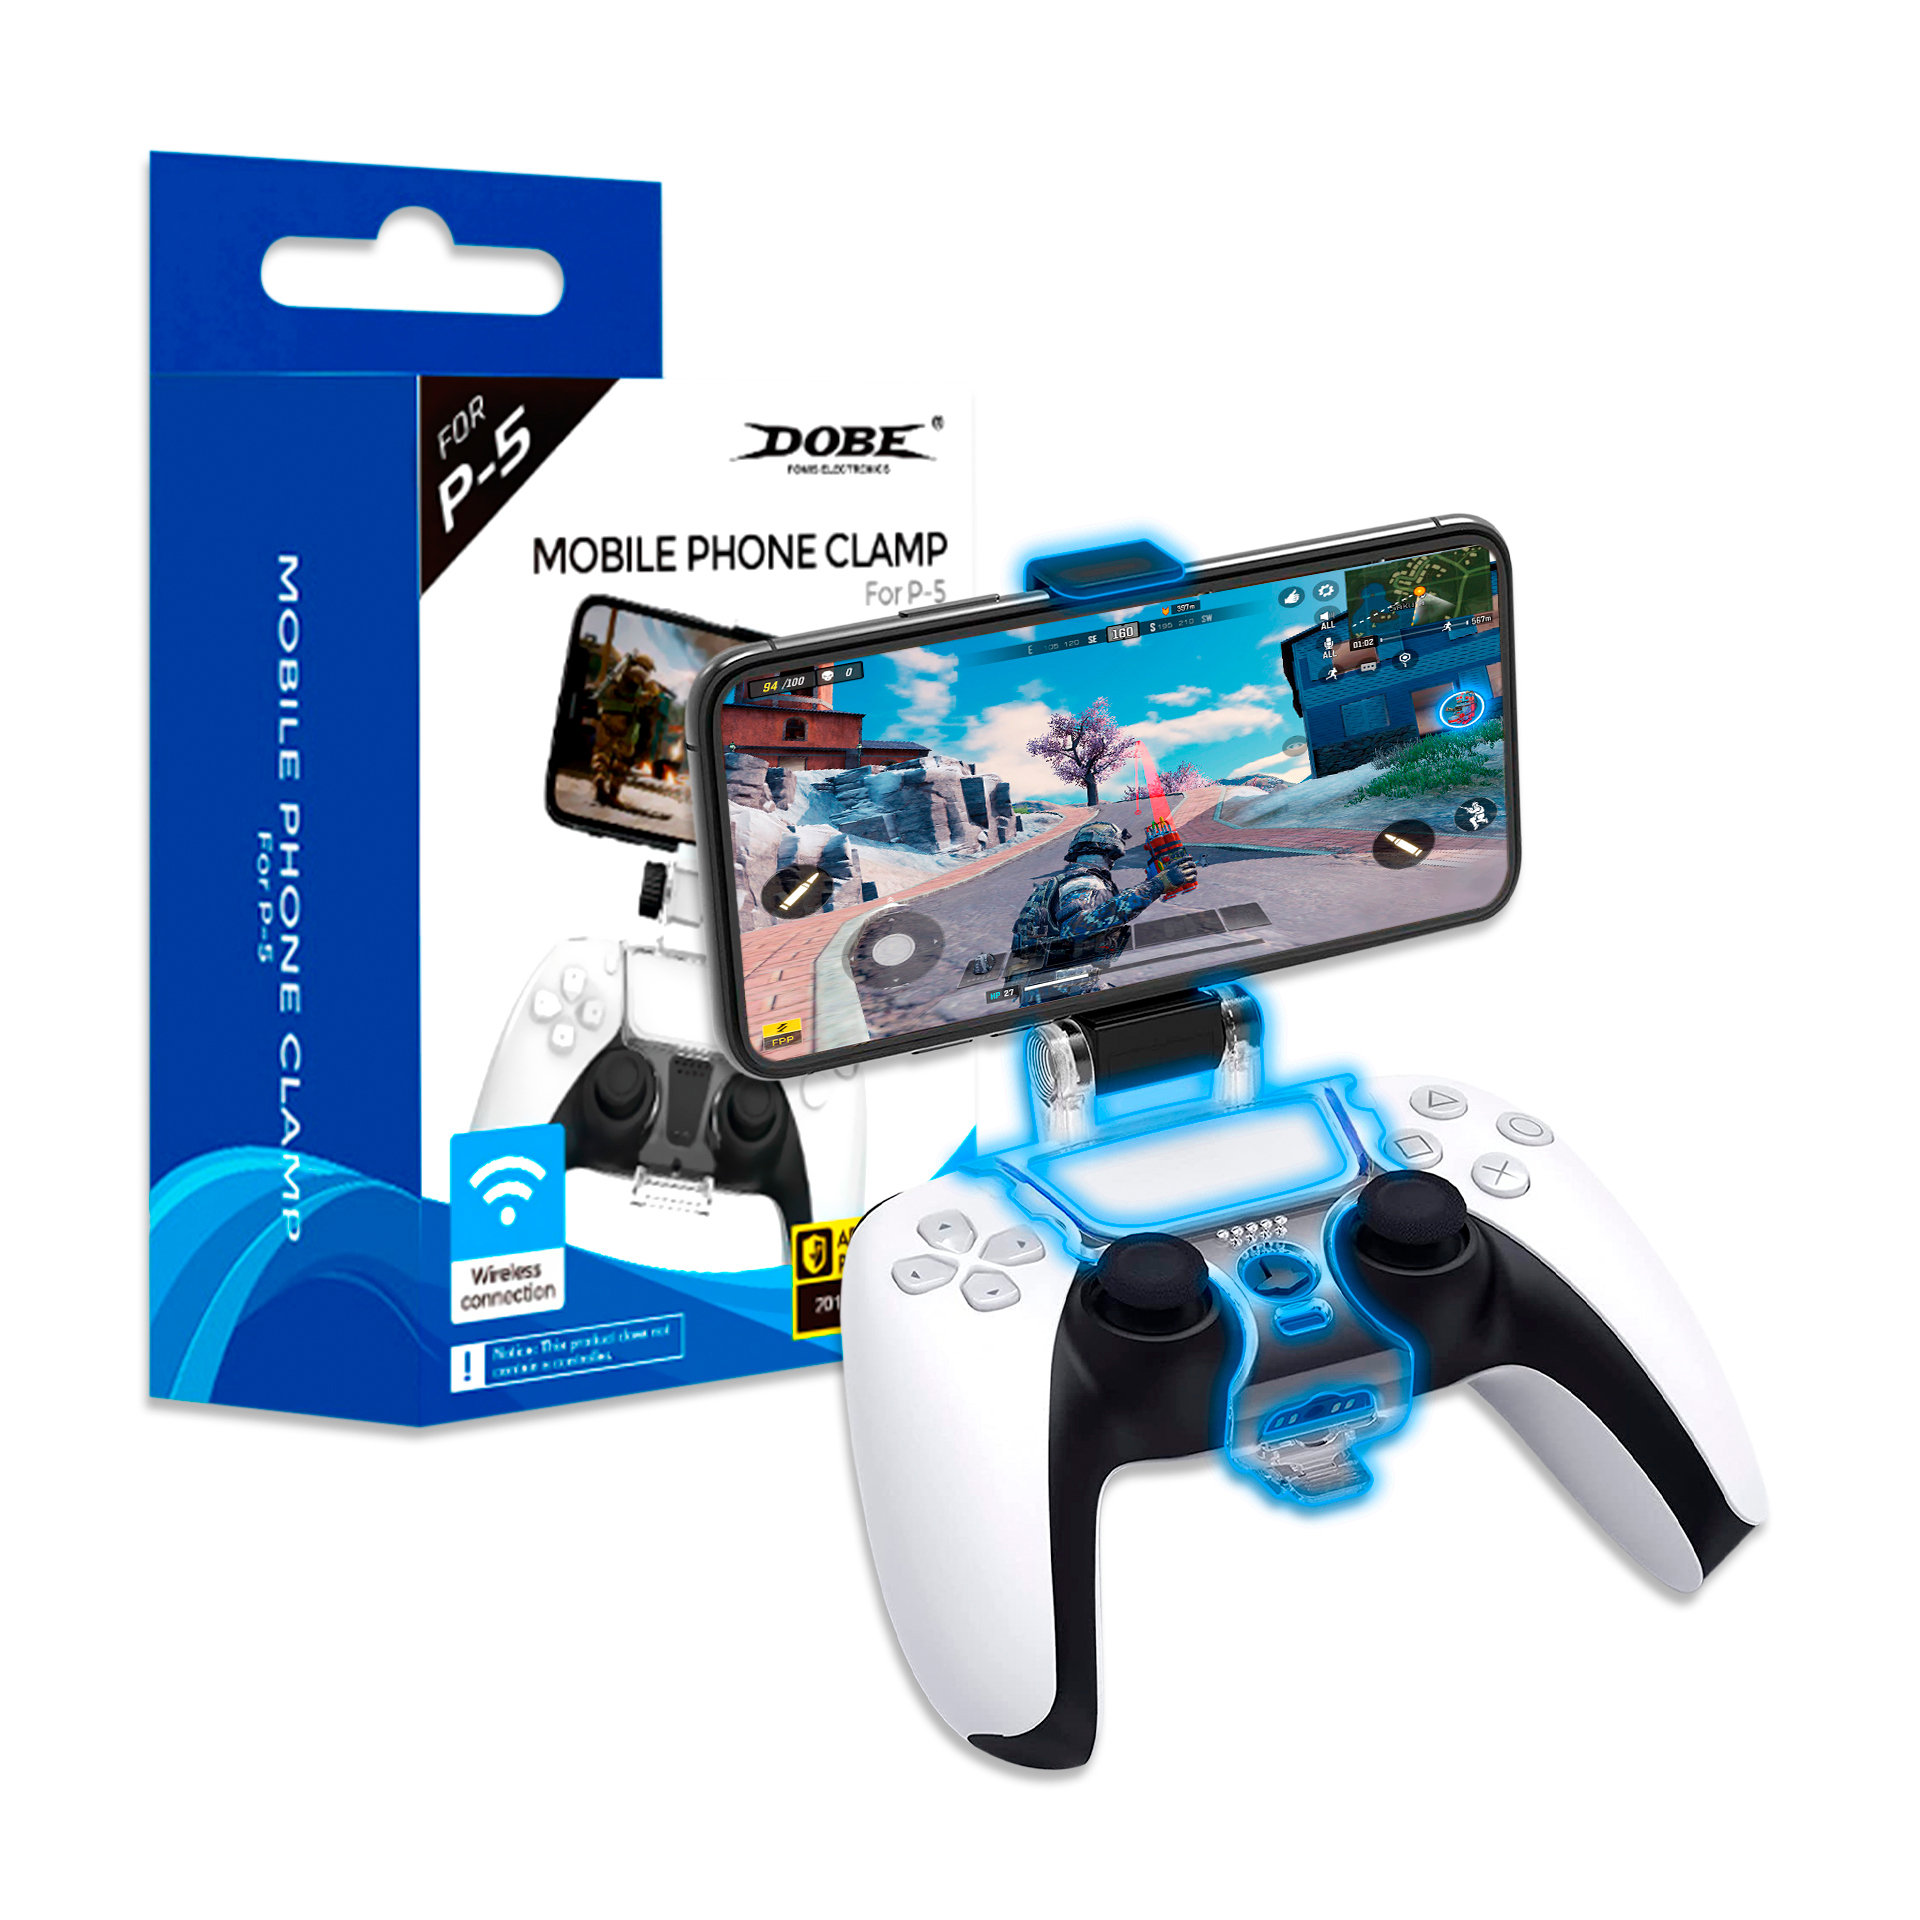 PS5  Precio oficial de sus accesorios: mando, headset, base de carga,  cámara y más - Meristation